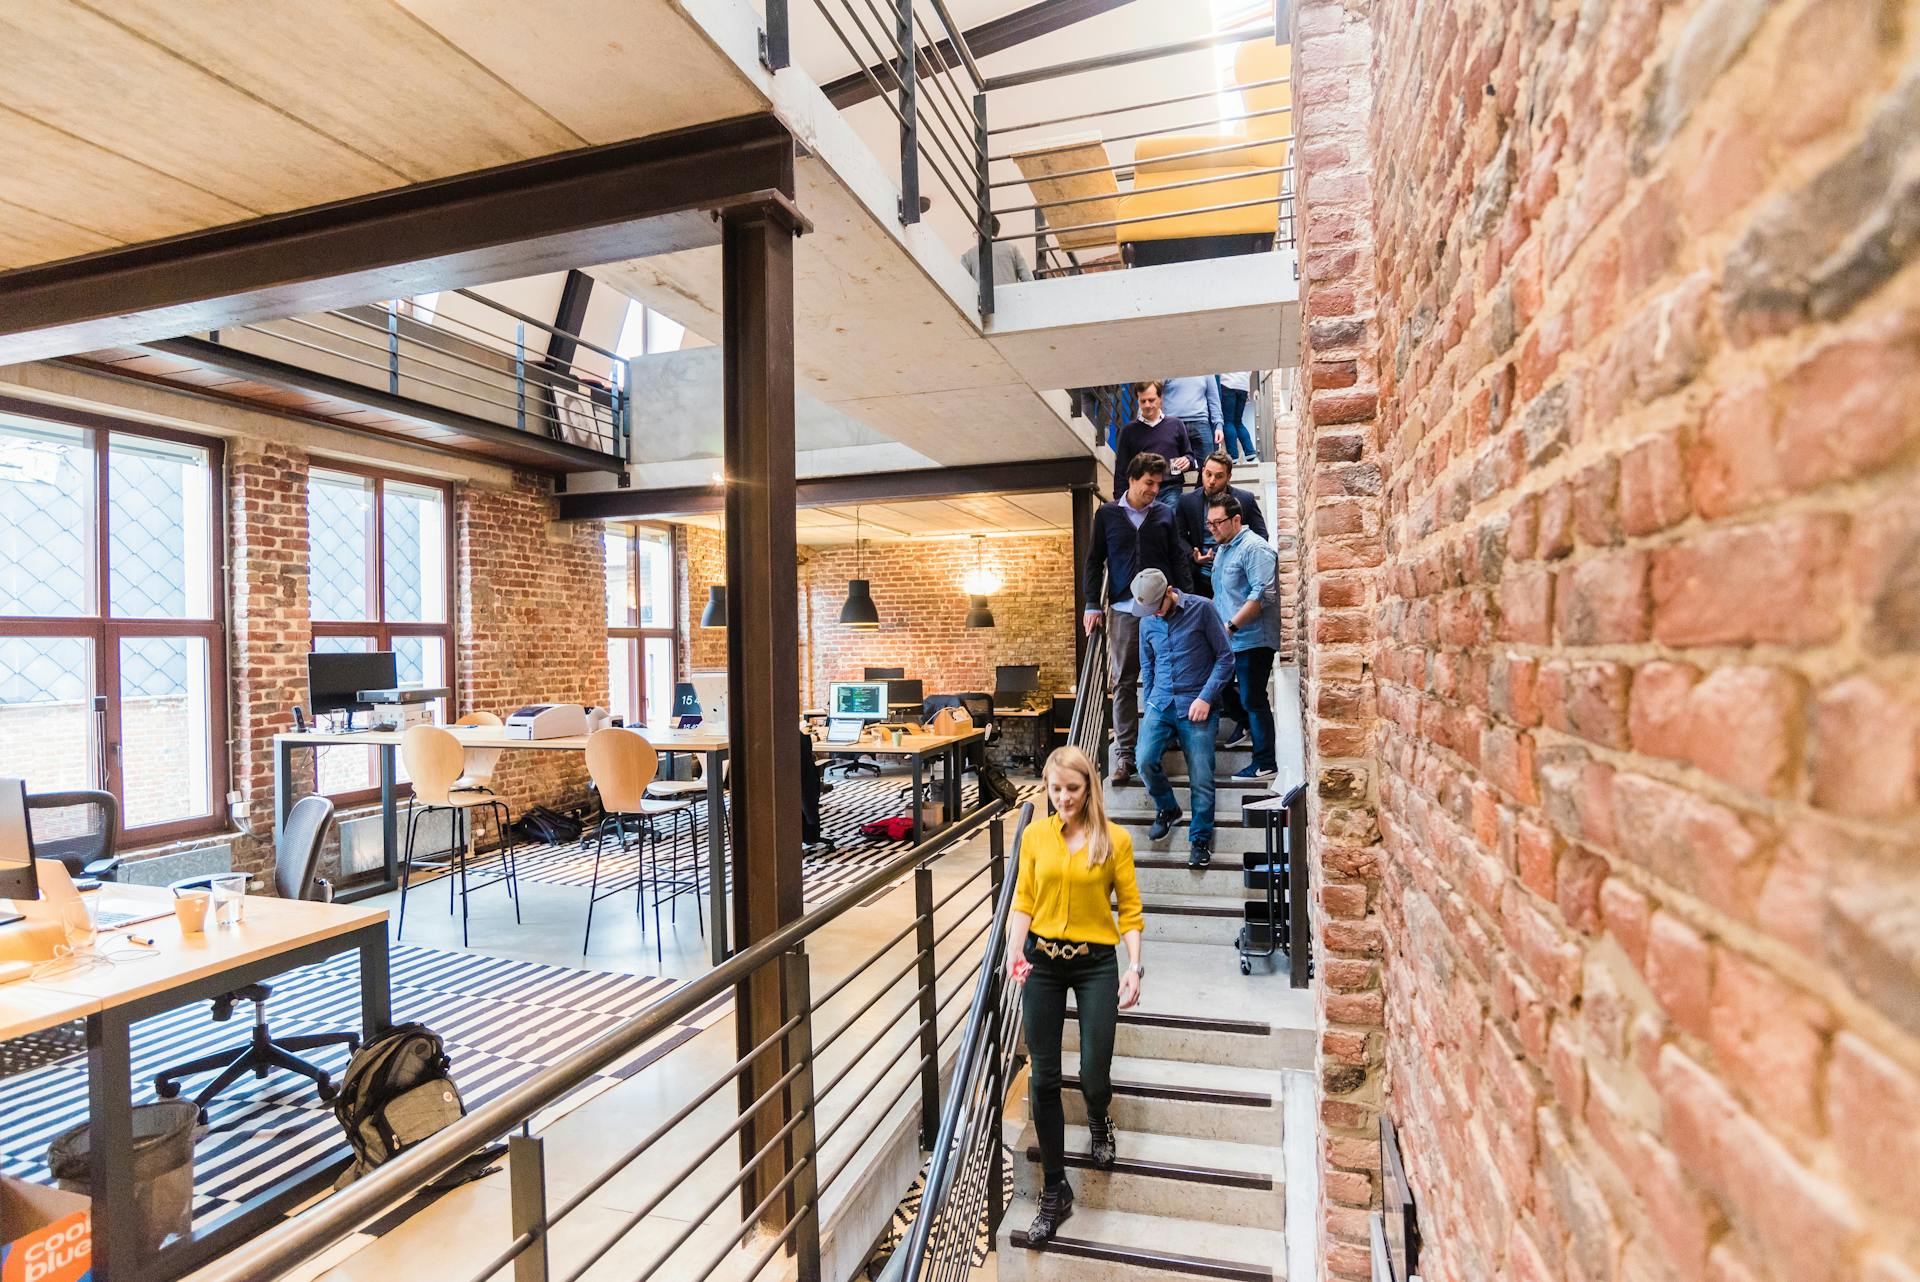 Gente bajando la escalera en un lugar de trabajo | Fuente: Pexels